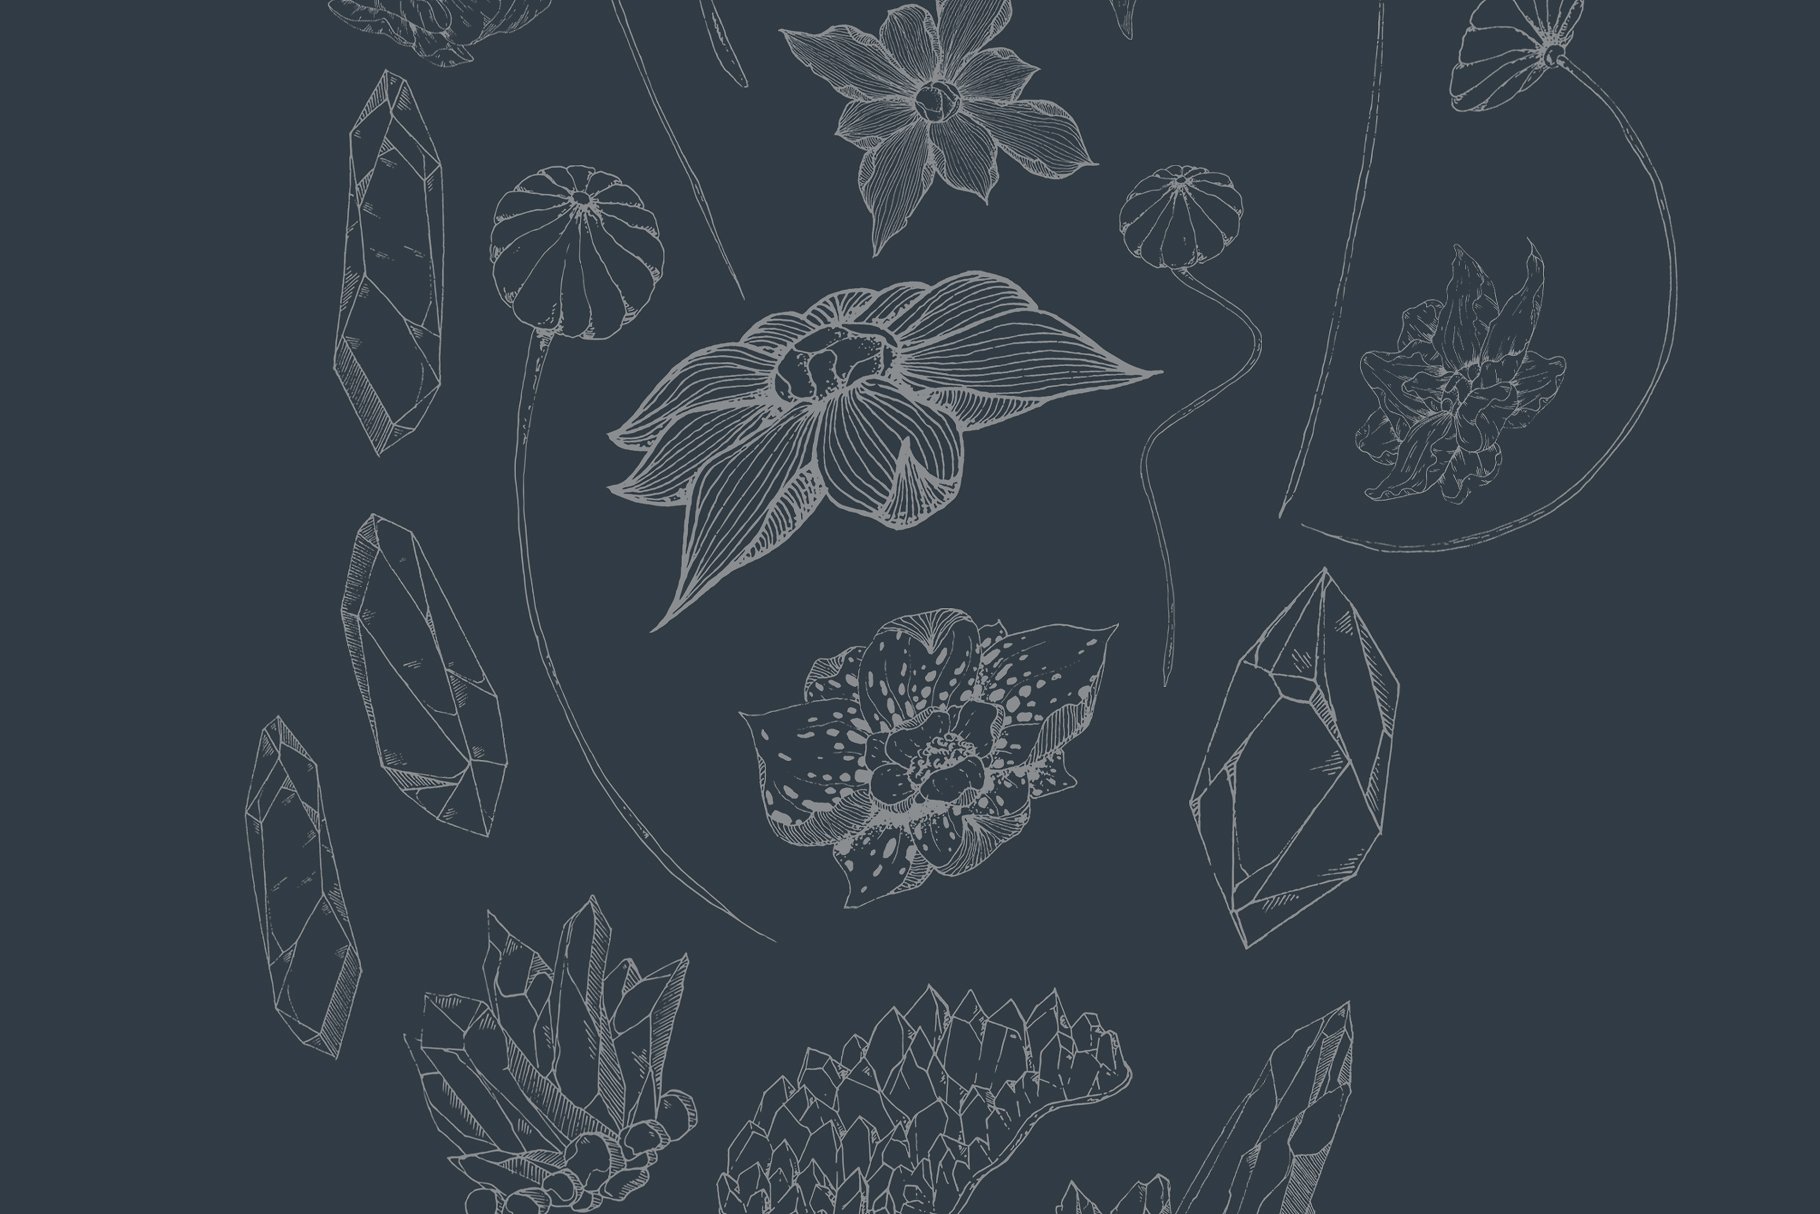 手绘线稿花卉植物设计素材Black Orchid Illus